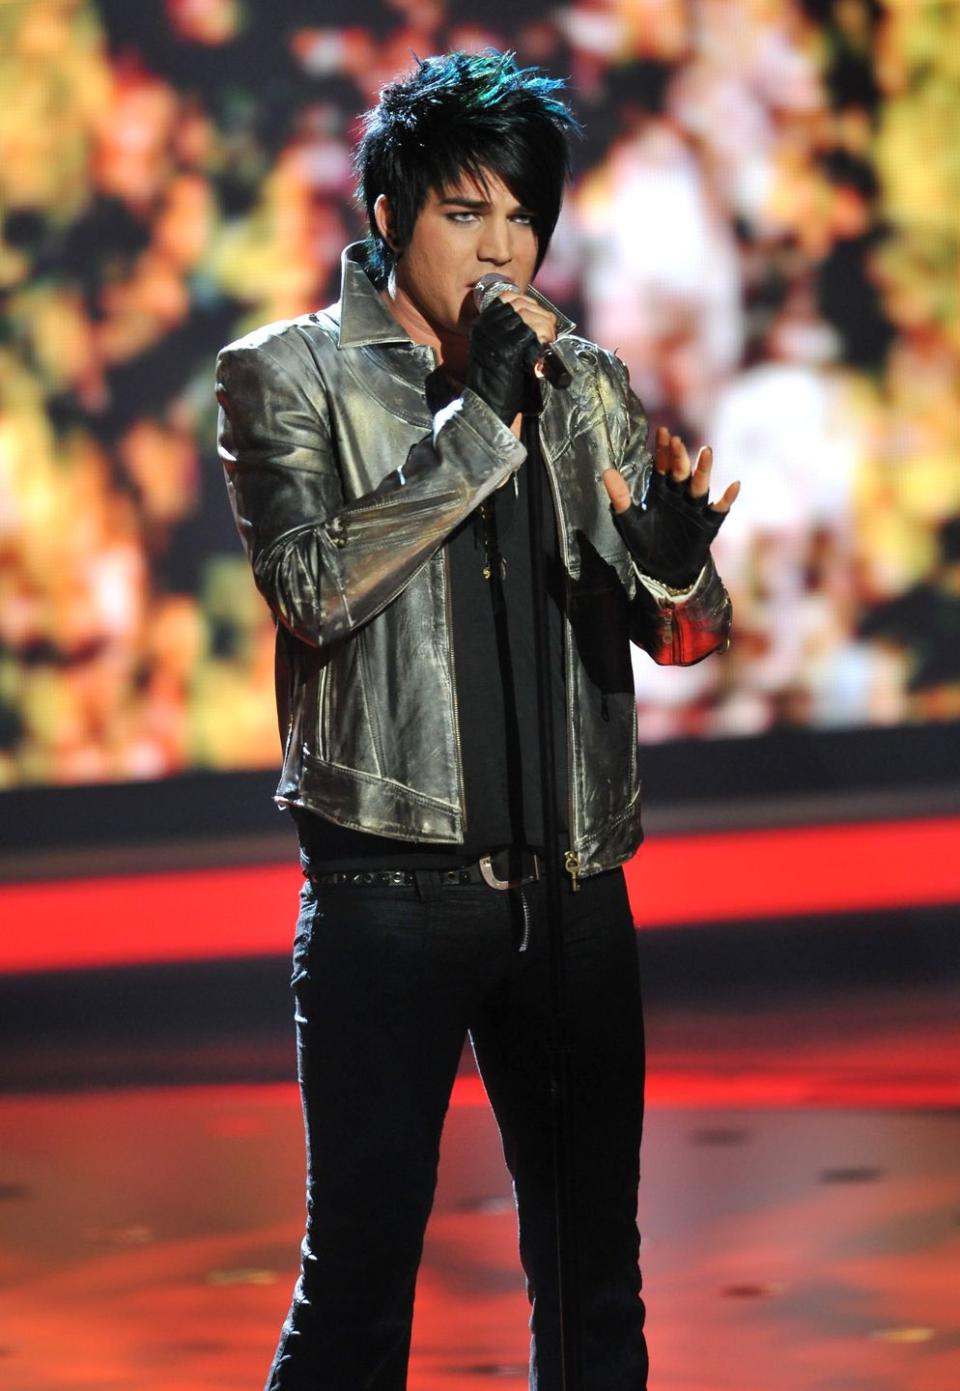 Adam Lambert: THEN